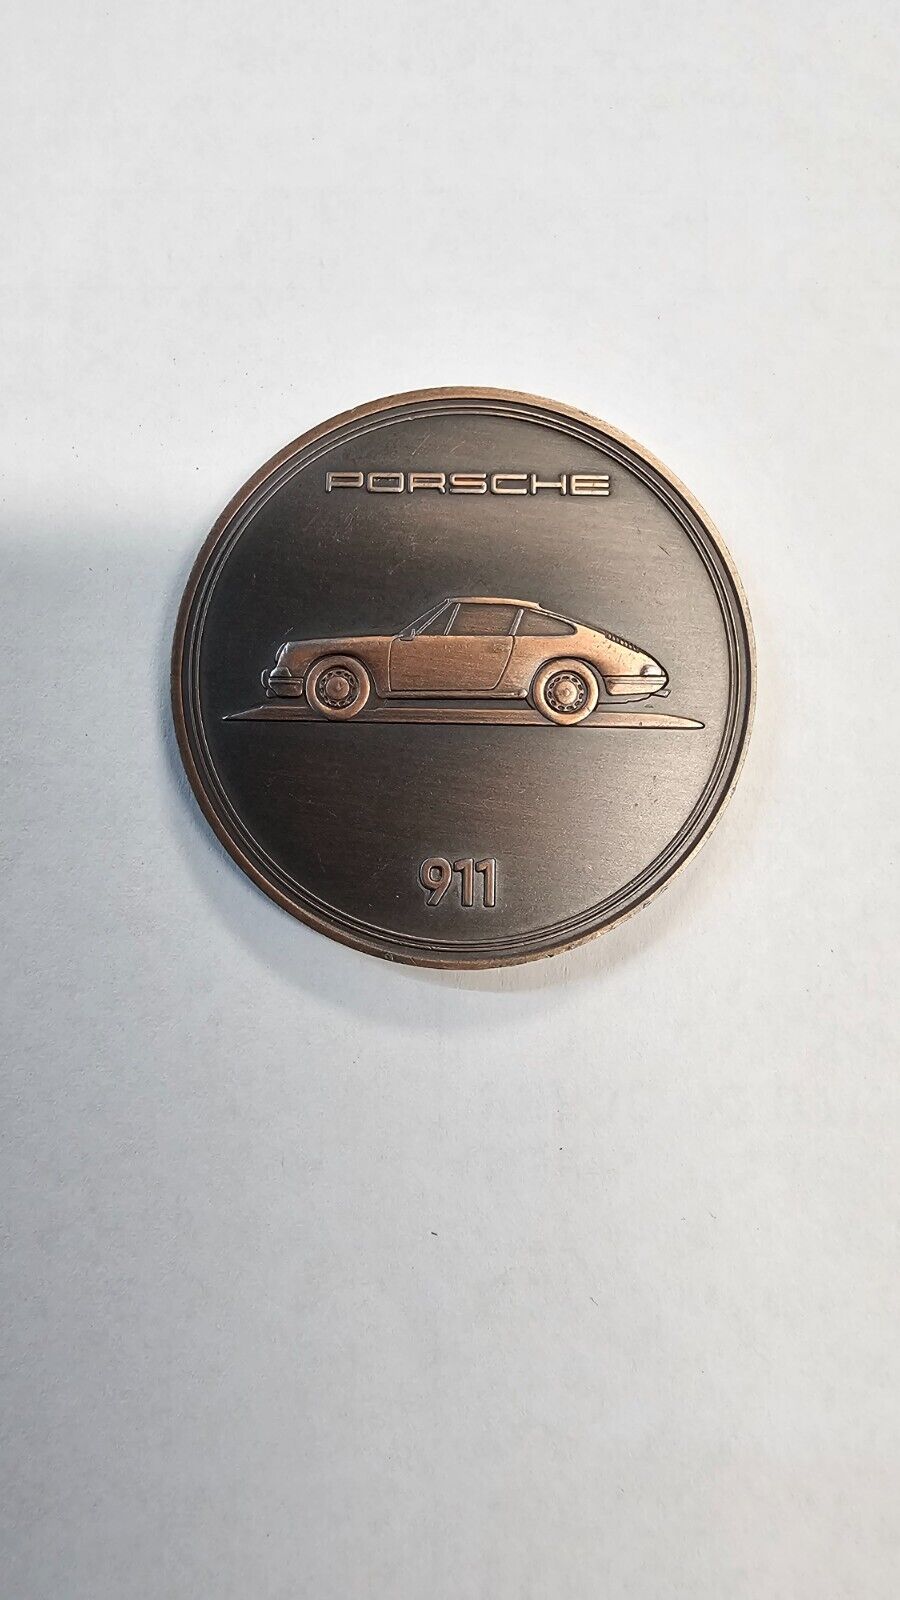 2023 Porsche 911 Calendar Coin